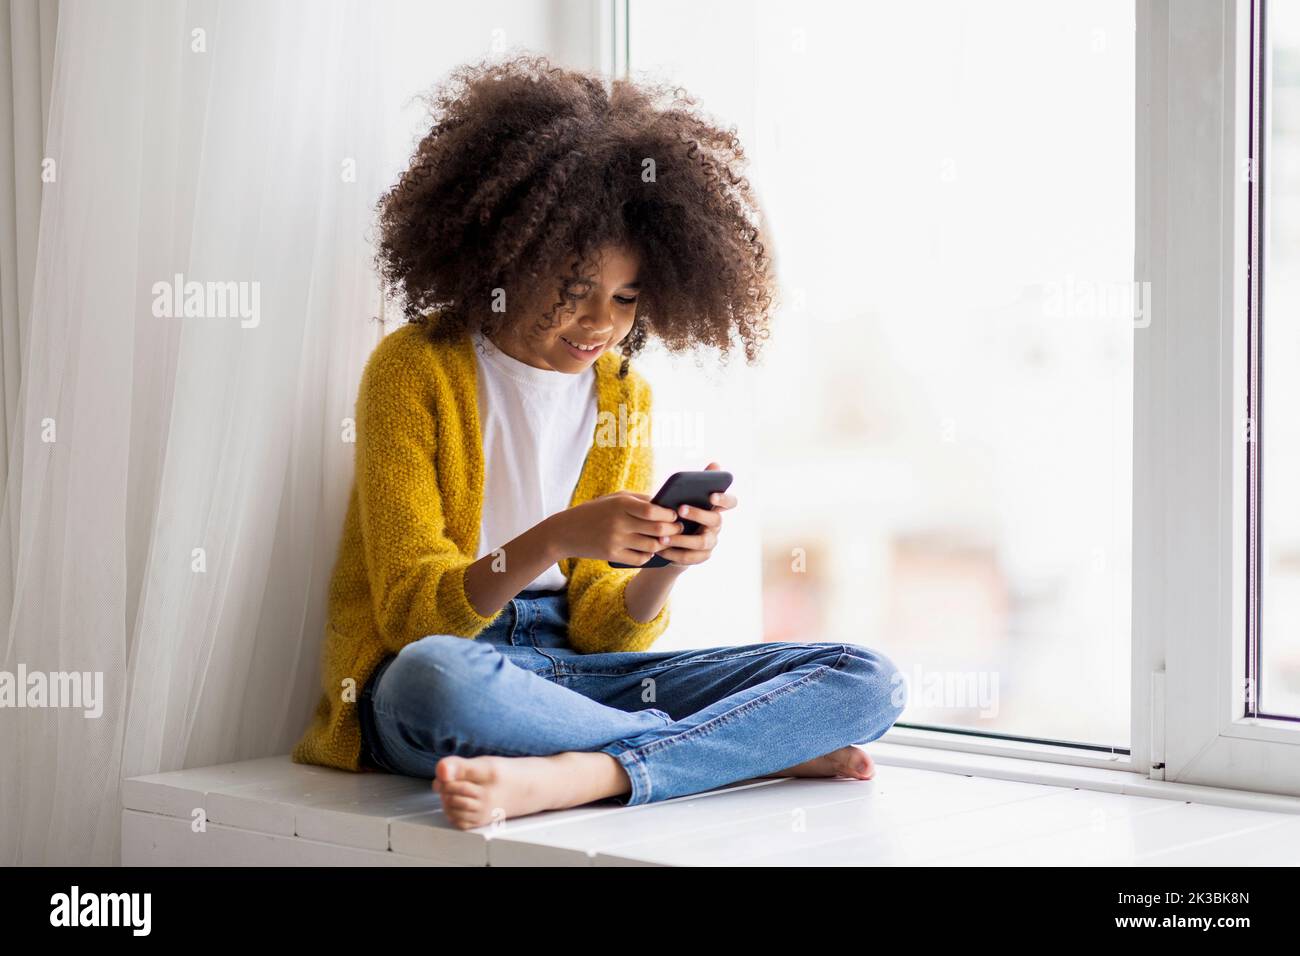 Enfant noir positif utilisant un téléphone cellulaire à la maison Banque D'Images